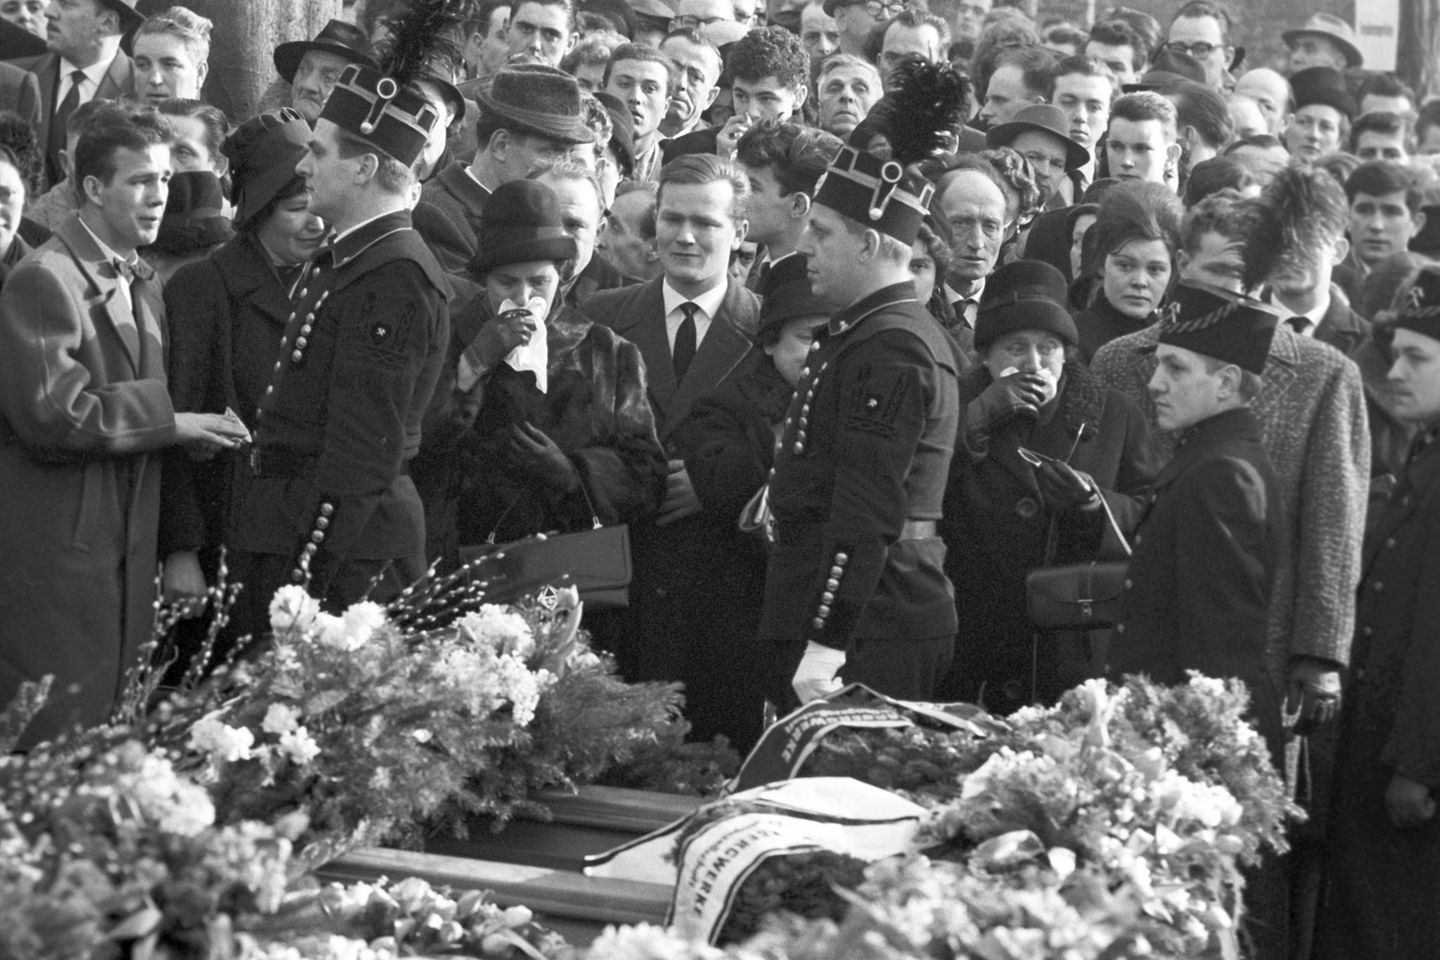 Auf der Trauerfeier am 10 Februar 1962 in Völklingen nehmen die Menschen Abschied von den getöteten Bergleuten